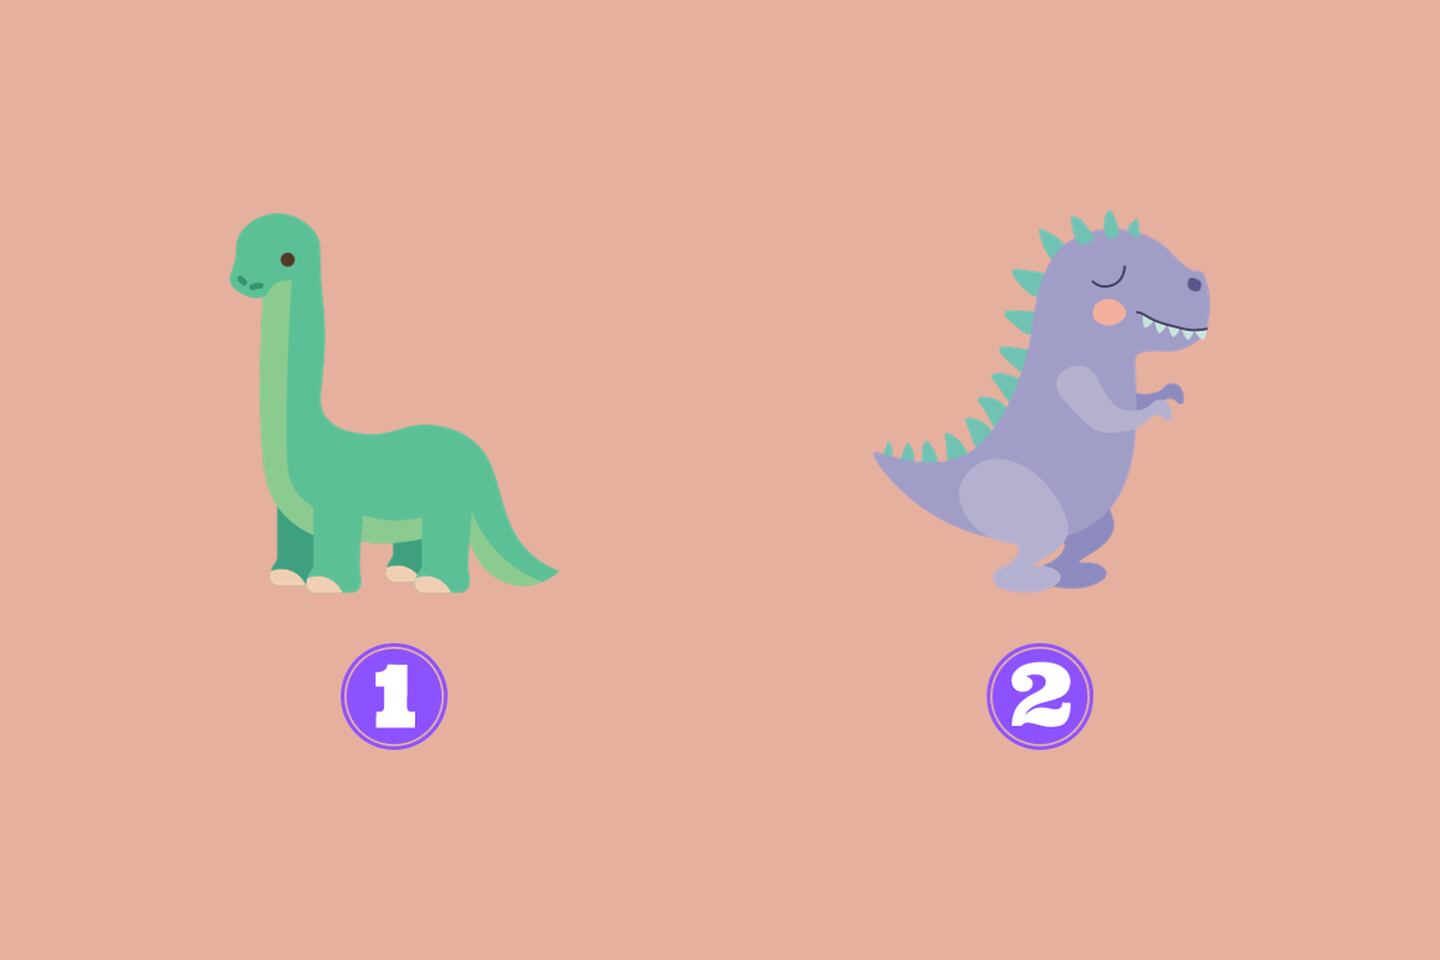 En este test de personalidad hay dos alternativas: un dinosaurio verde y otro morado.